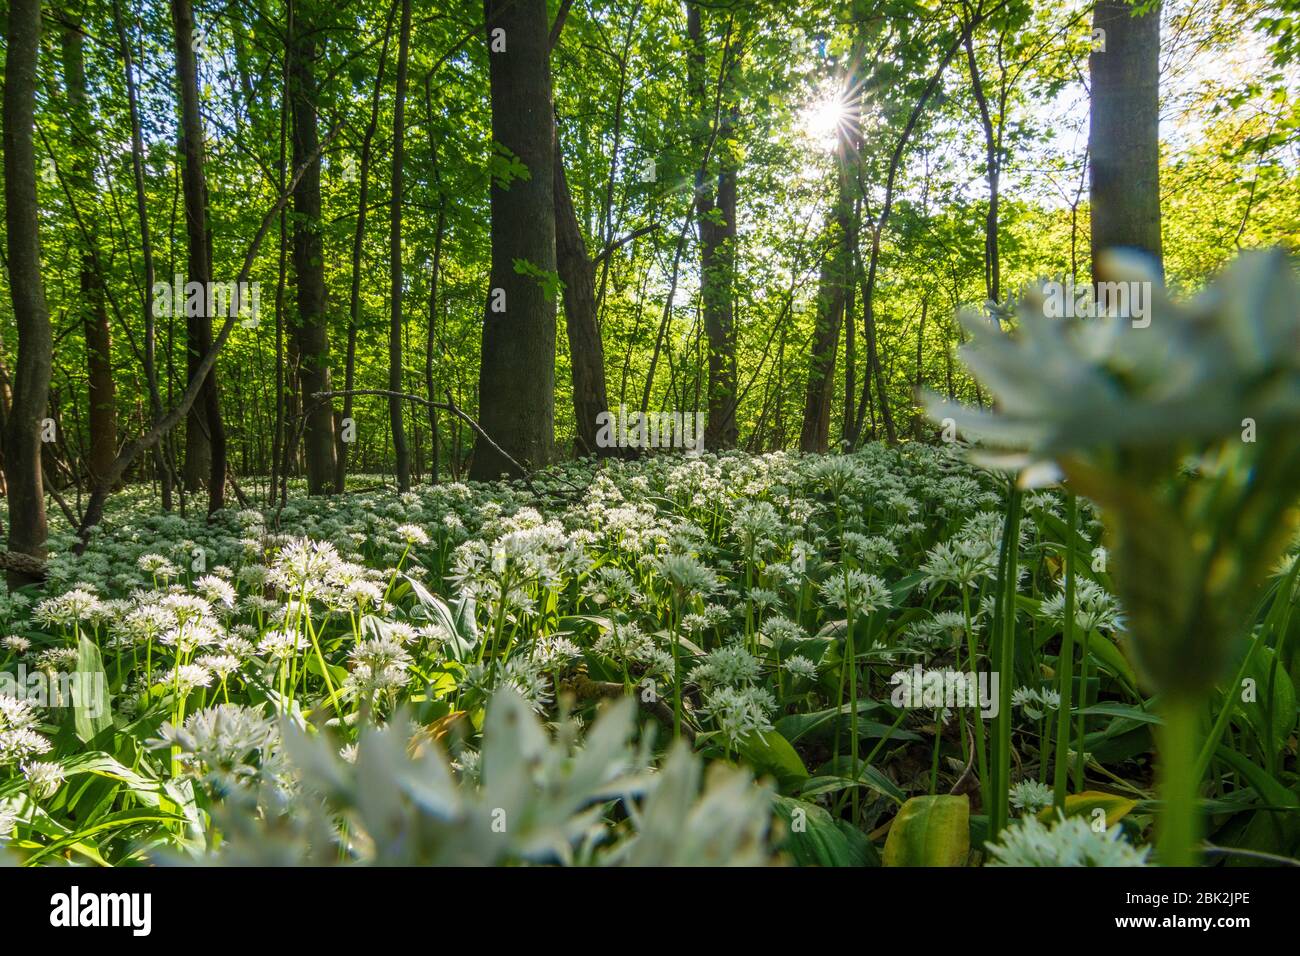 Nationalpark Donauauen, Donau-Auen Nationalpark: Blühender Bärlauch (Allium ursinum) im Nationalpark Donauauen, Bärlauch, Bäume, Dschungel, Urzeit Stockfoto